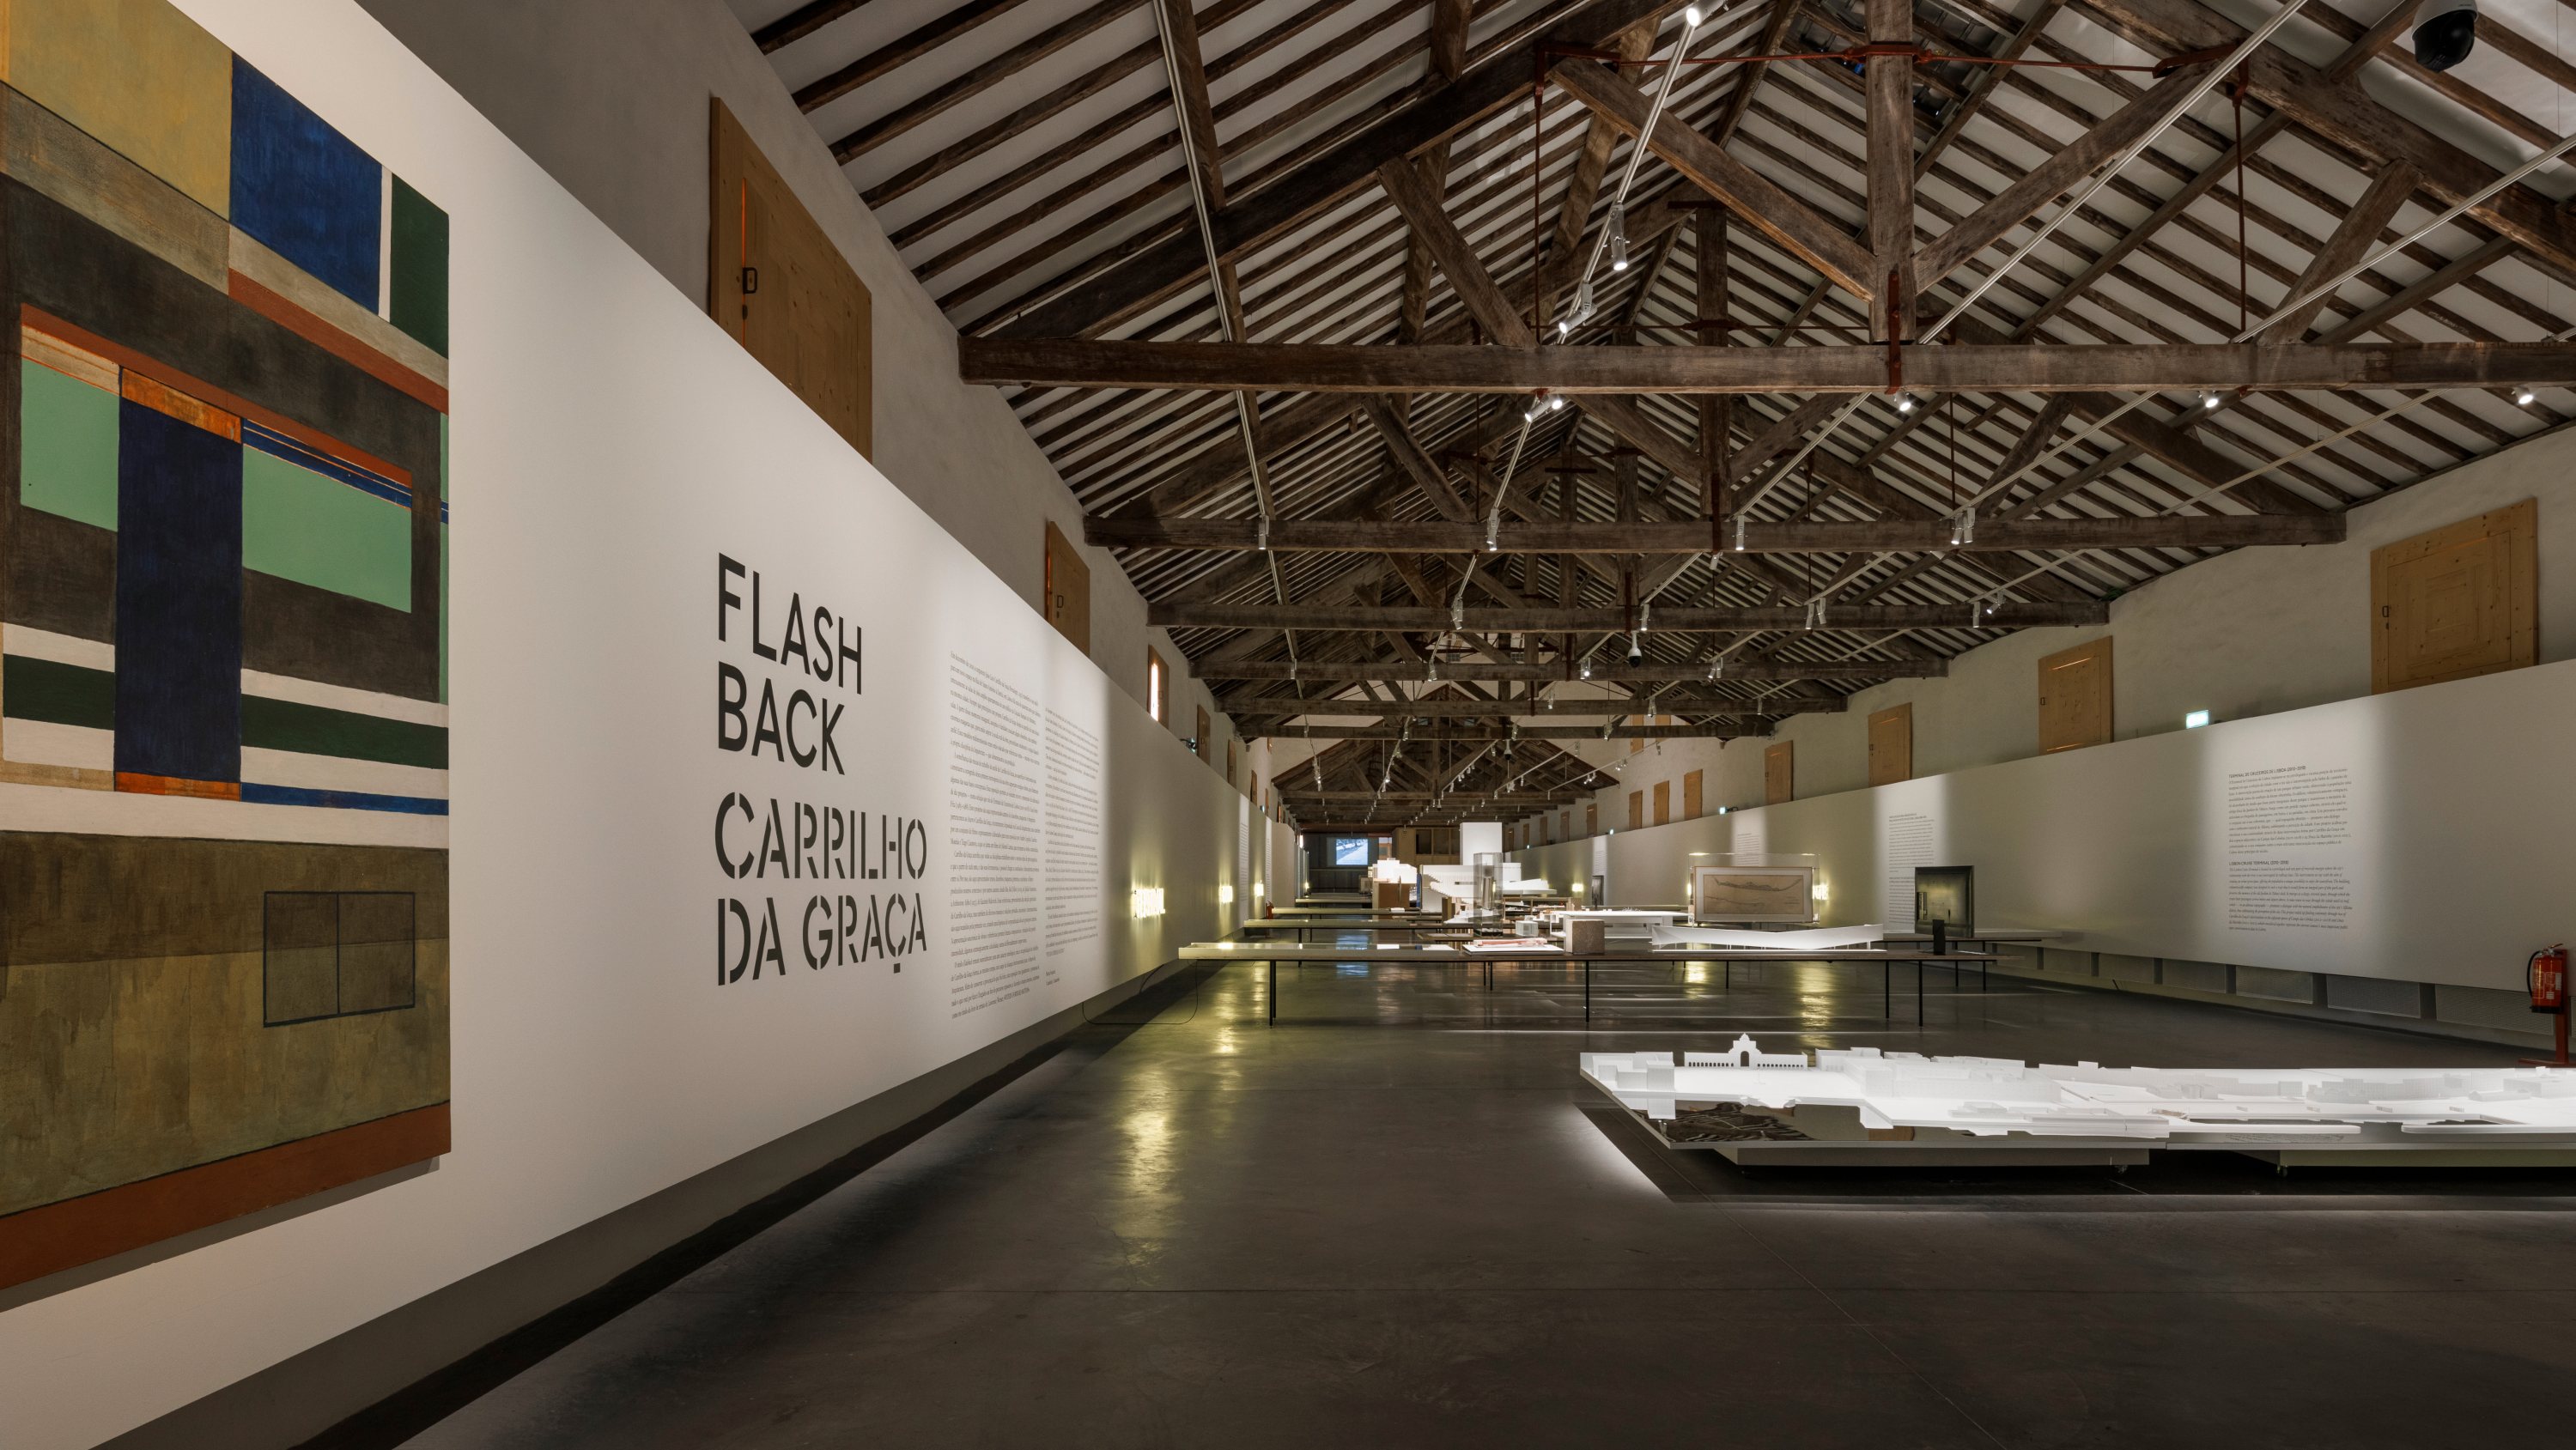 A exposição &quot;Flashback Carrilho da Graça&quot; está disponível na Casa da Arquitetura a partir de sexta-feira, dia 8 de abril, até ao dia 29 de janeiro de 2023